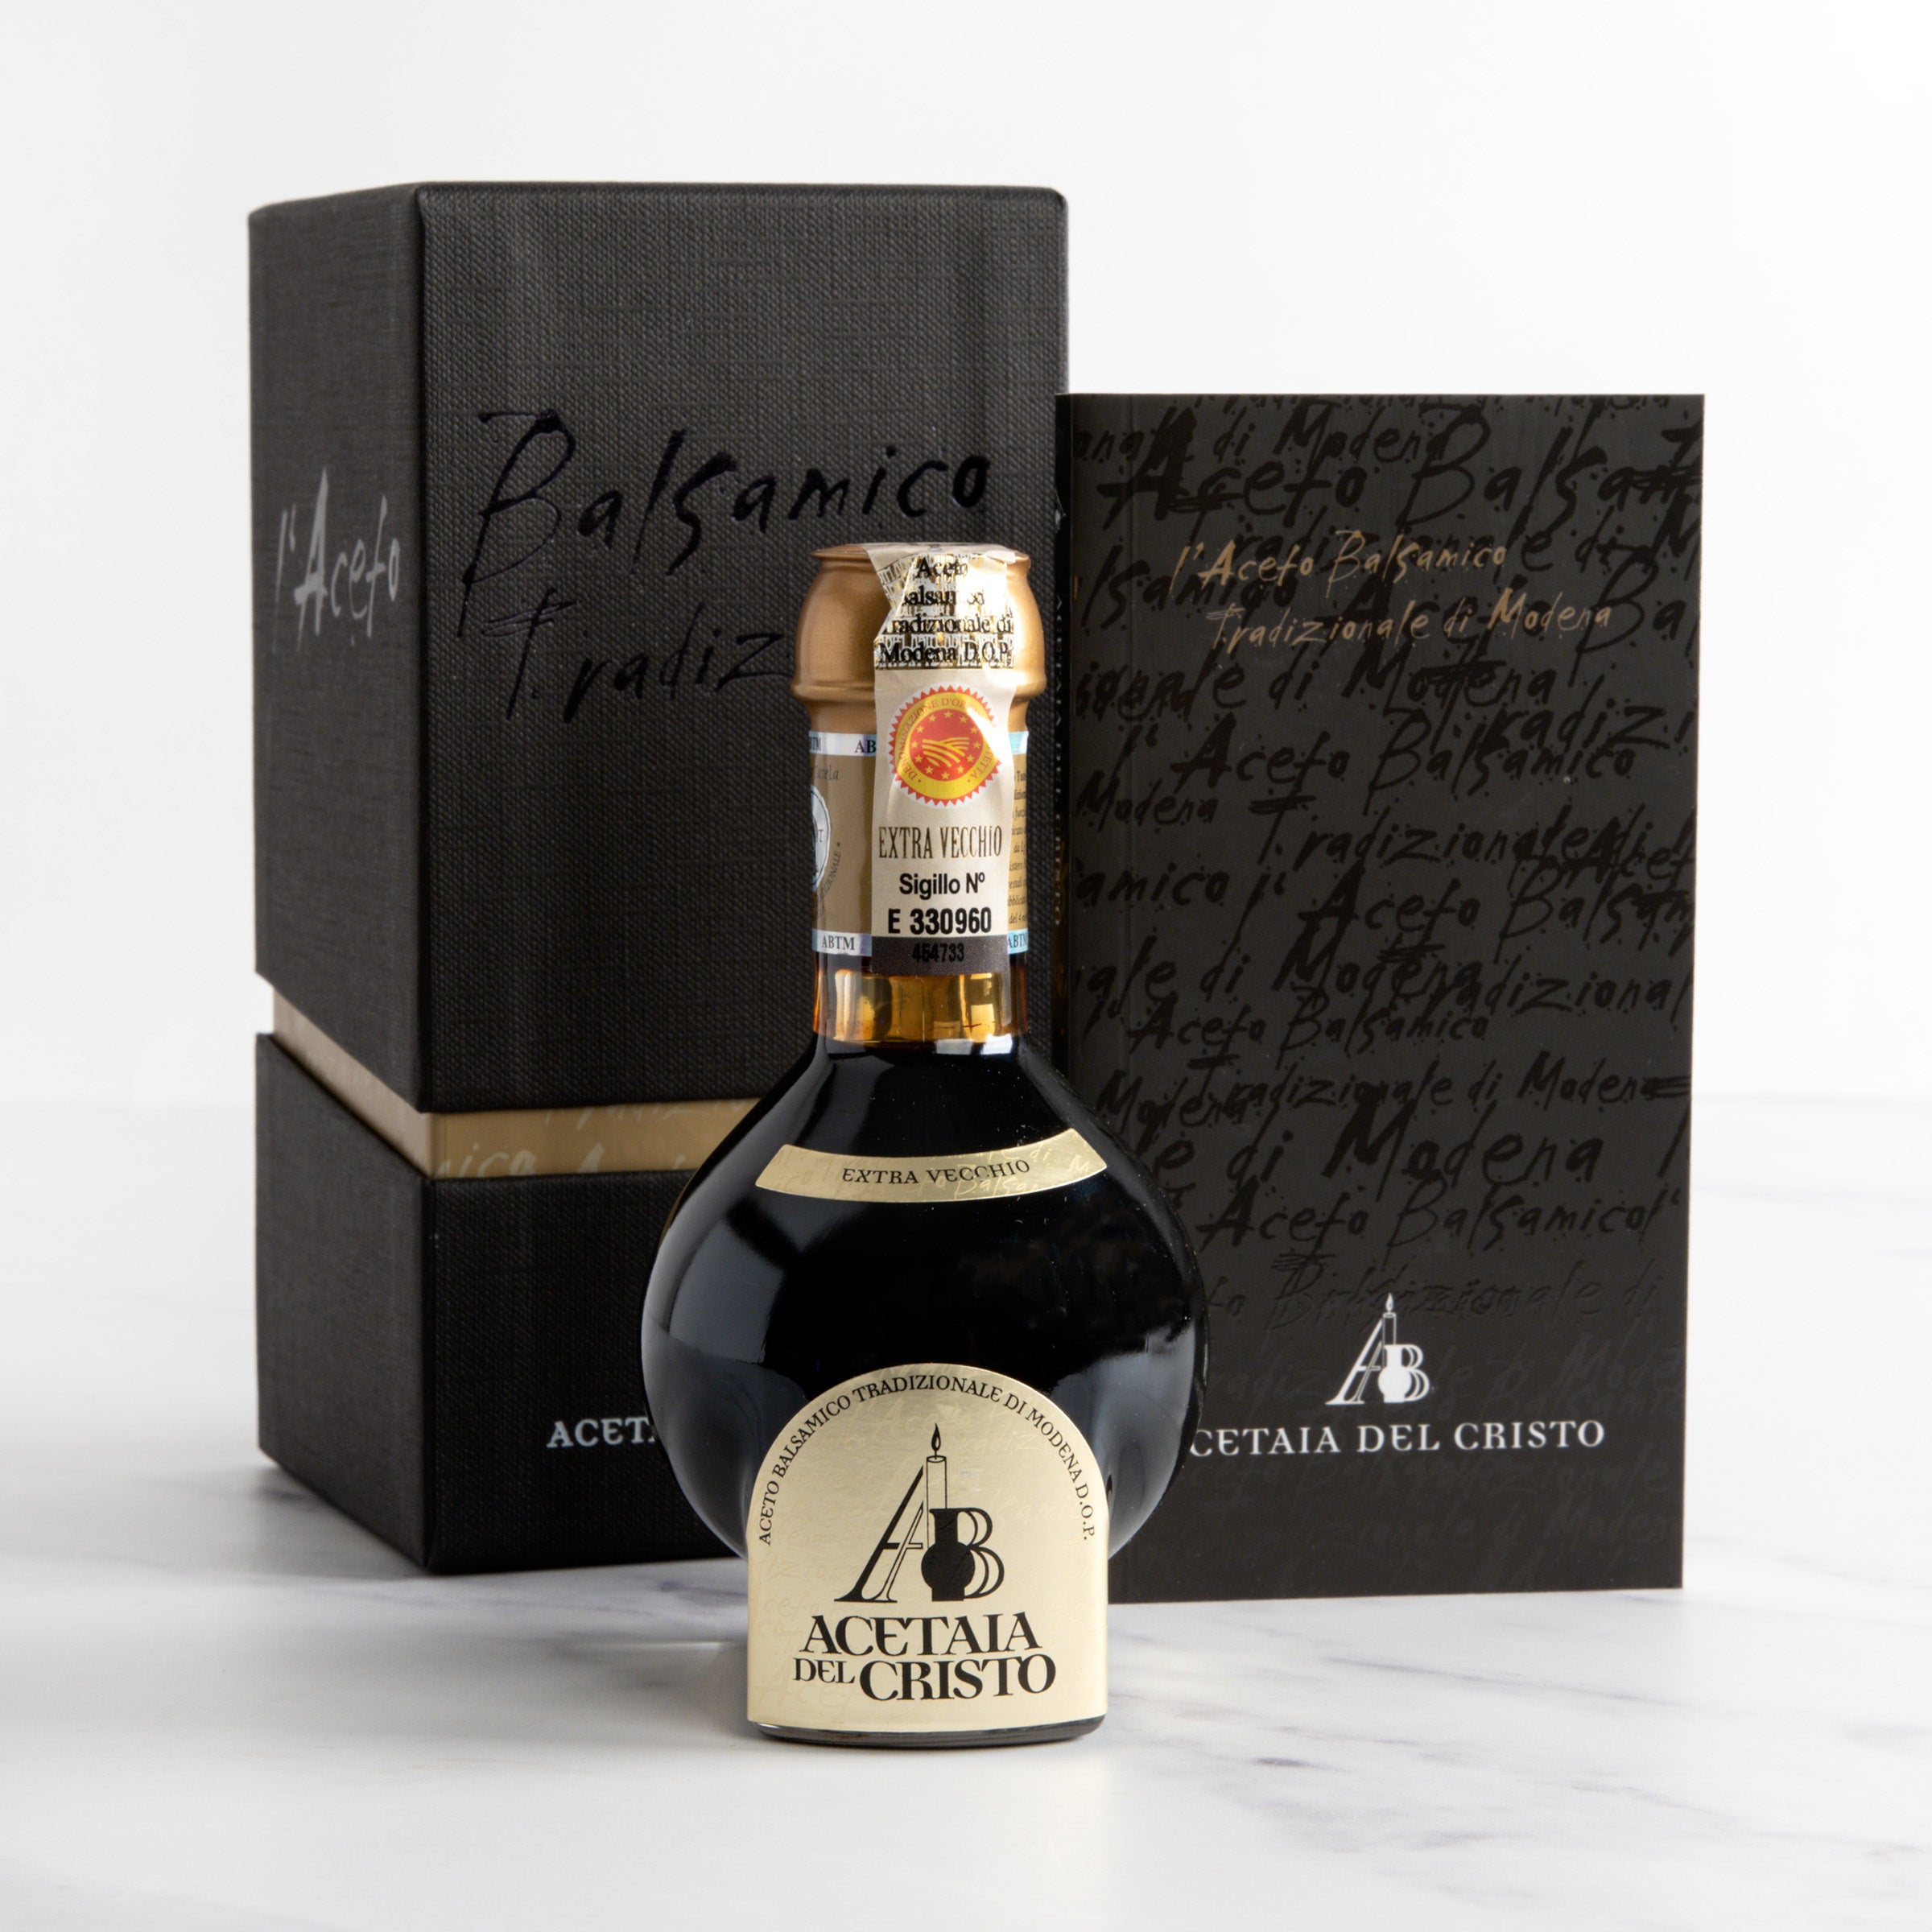 Balsamico Tradizionale di Modena DOP 25 Yrs - Del Cristo - Italian Balsamic Vinegar